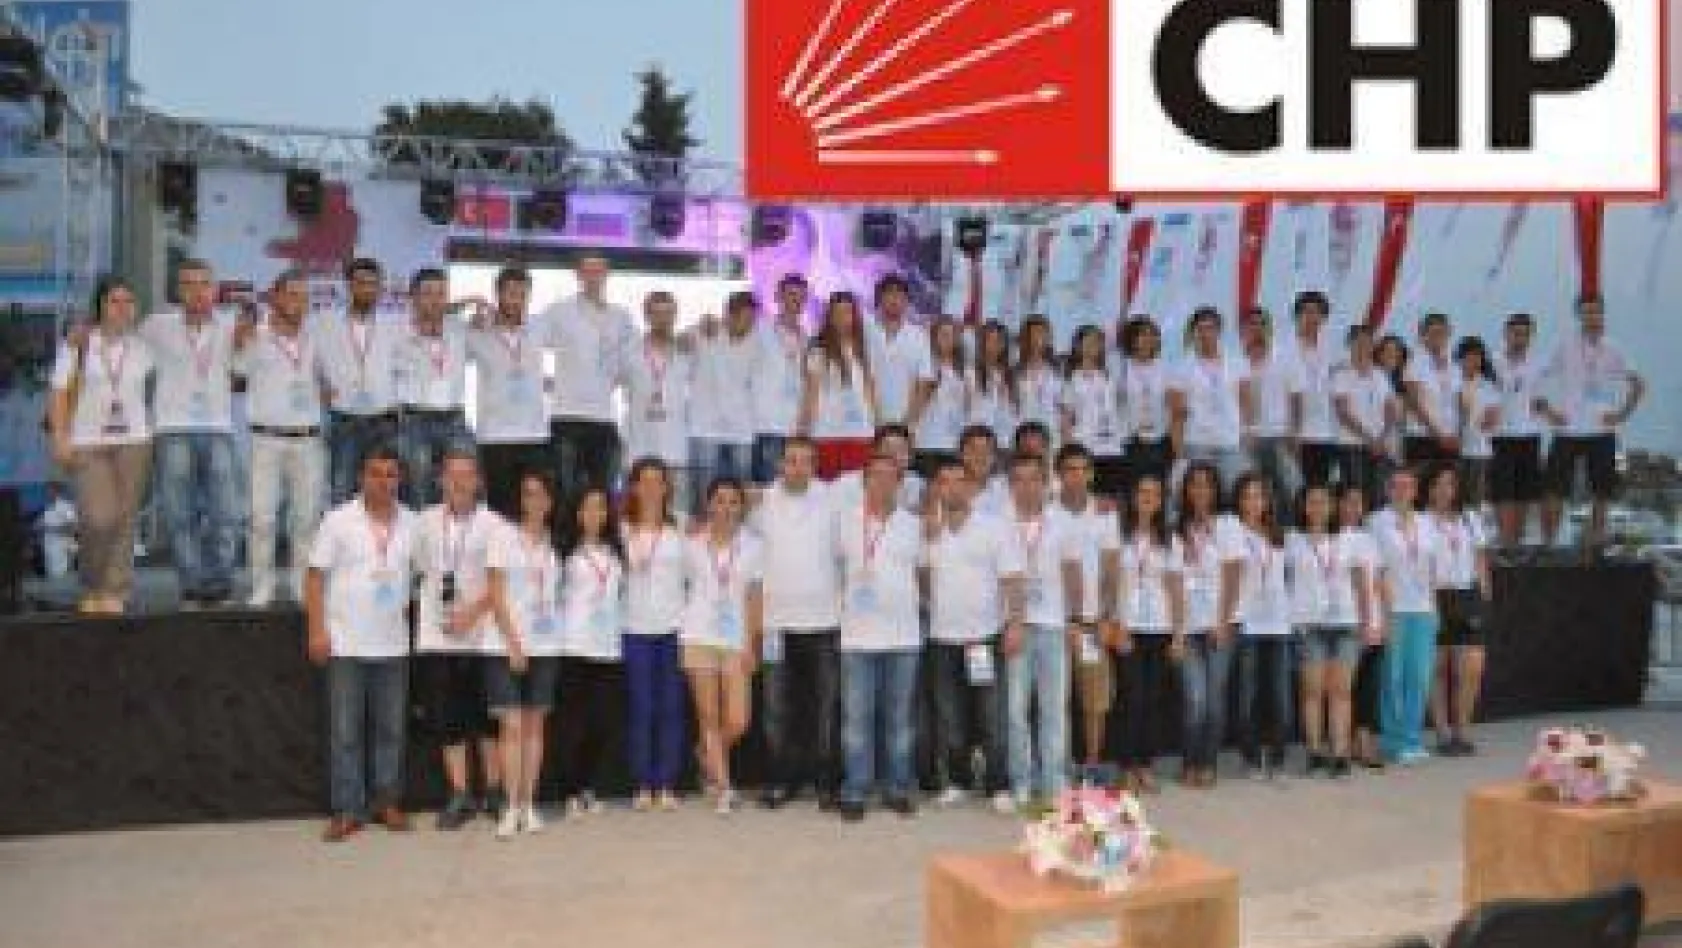 CHP'li Gençler takdir topluyor